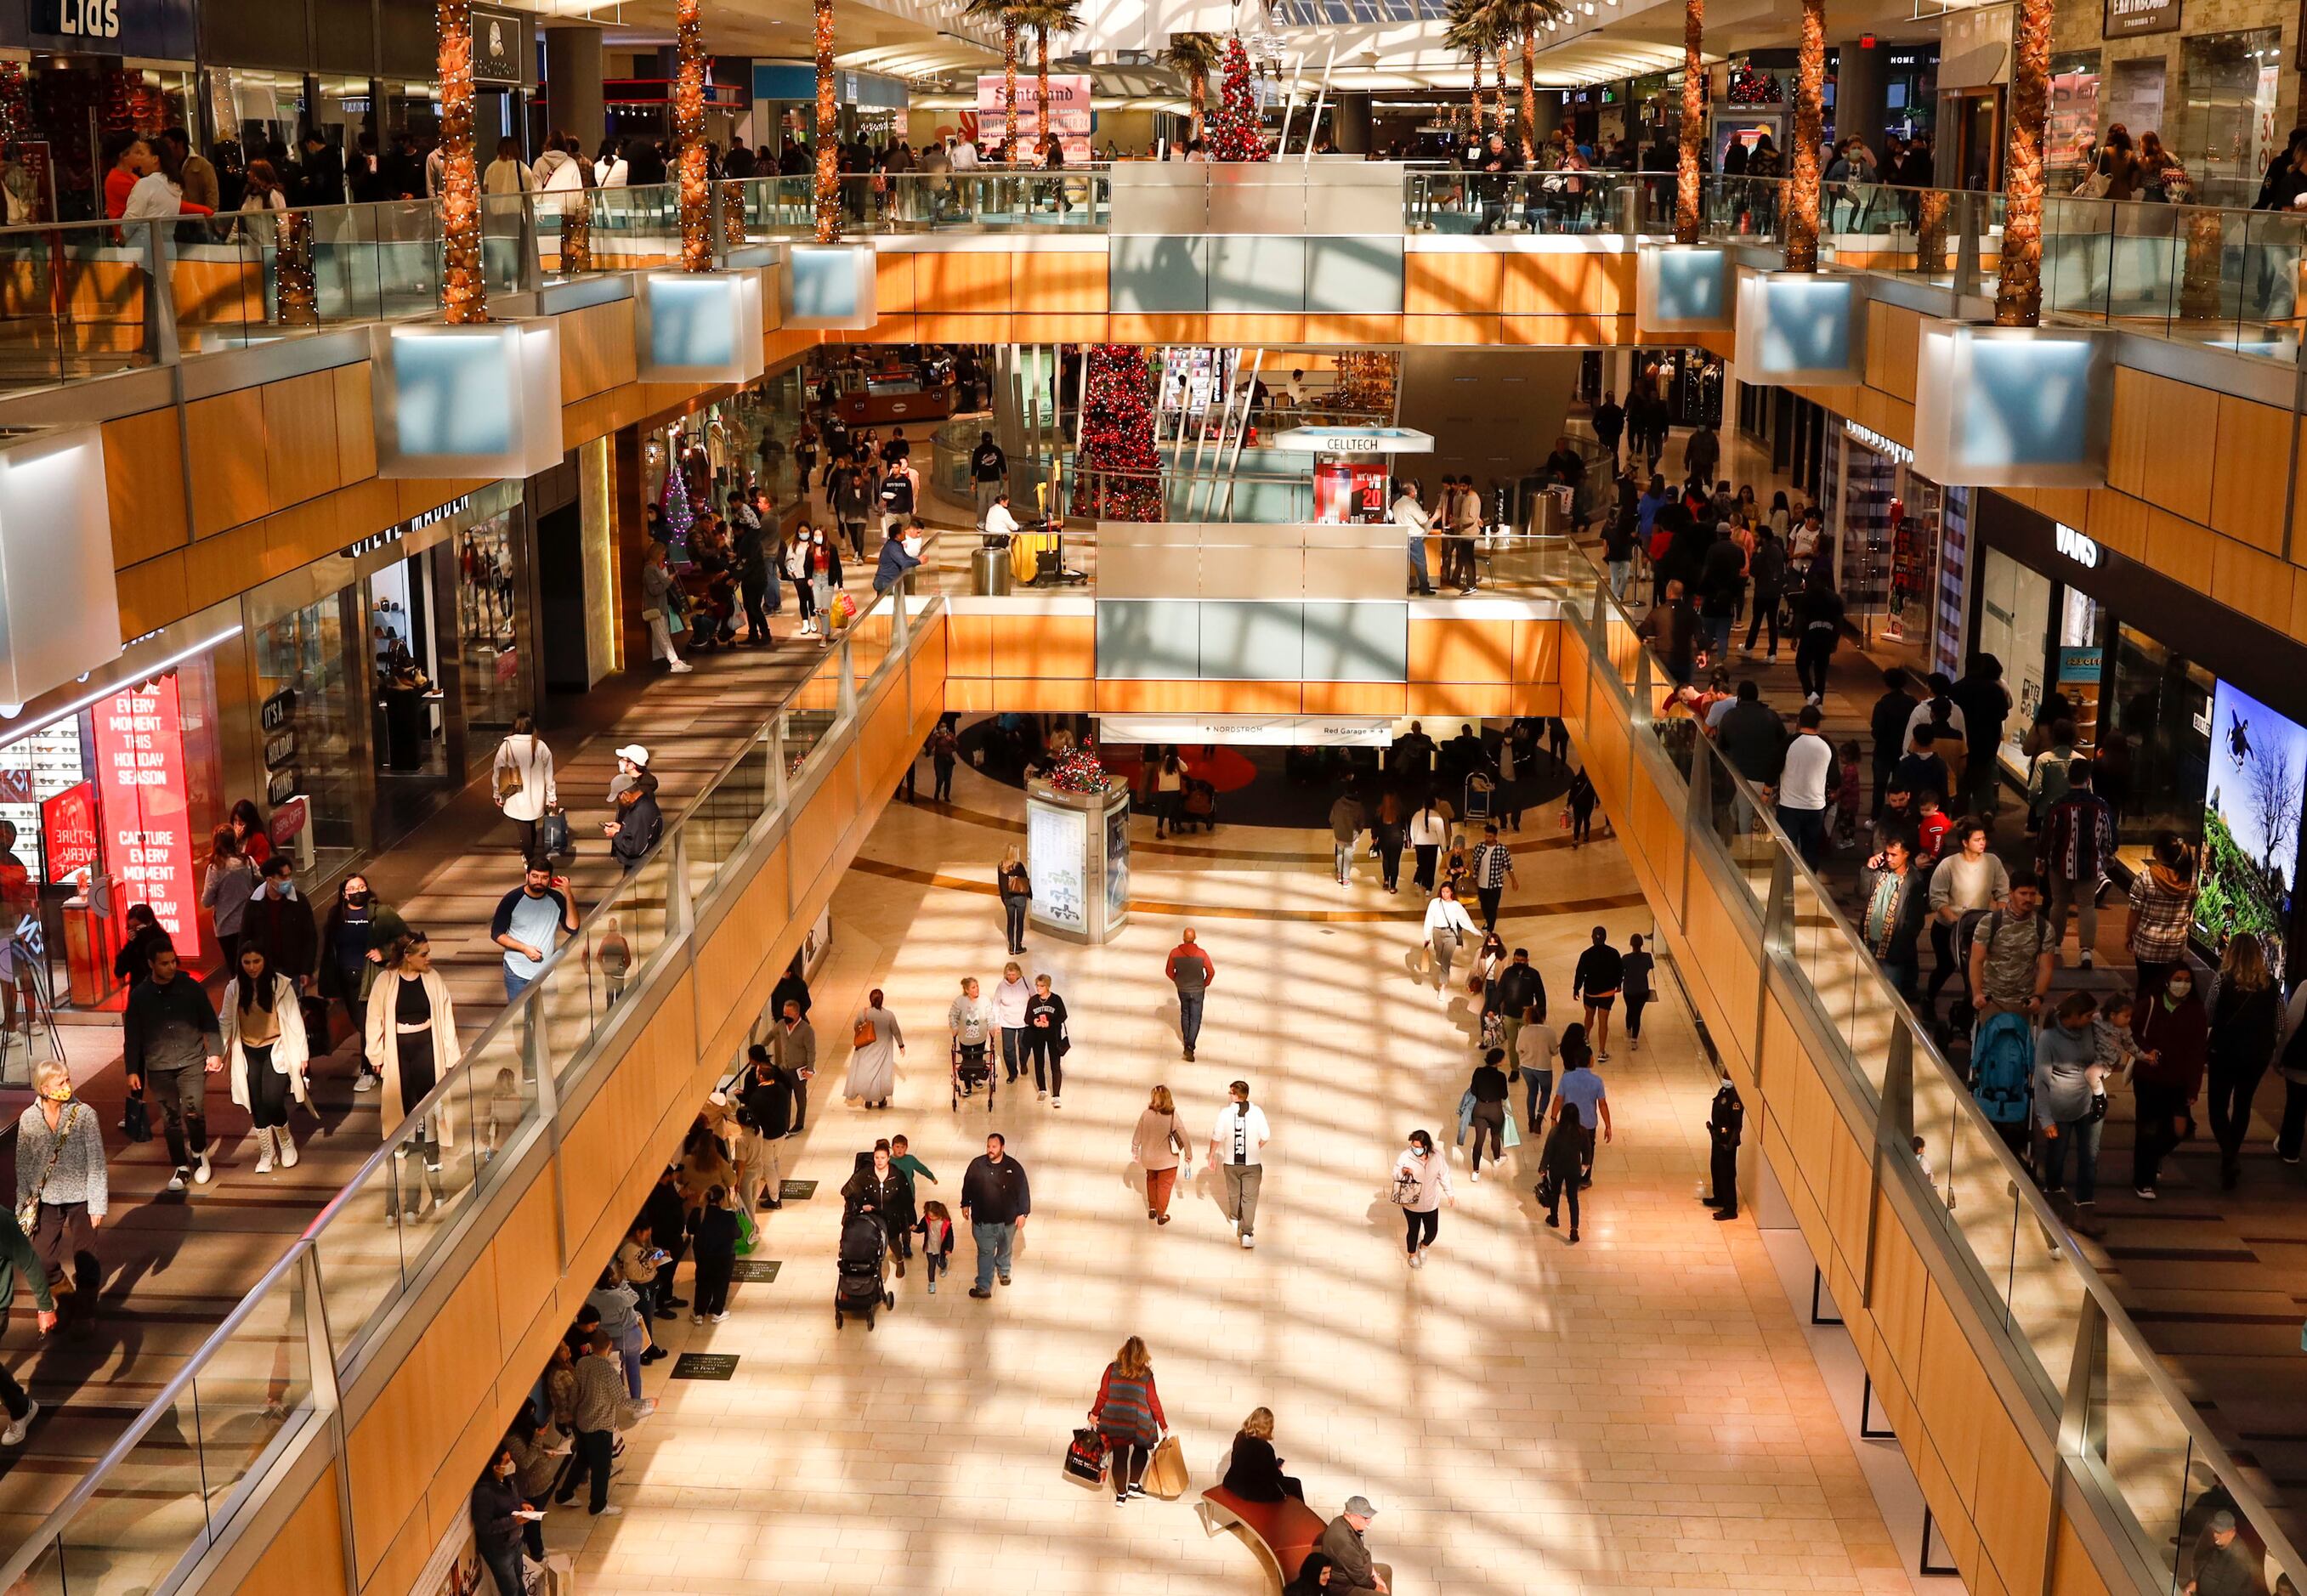 2021's Top 10 Retail Experiences: No. 3 Galleria Dallas